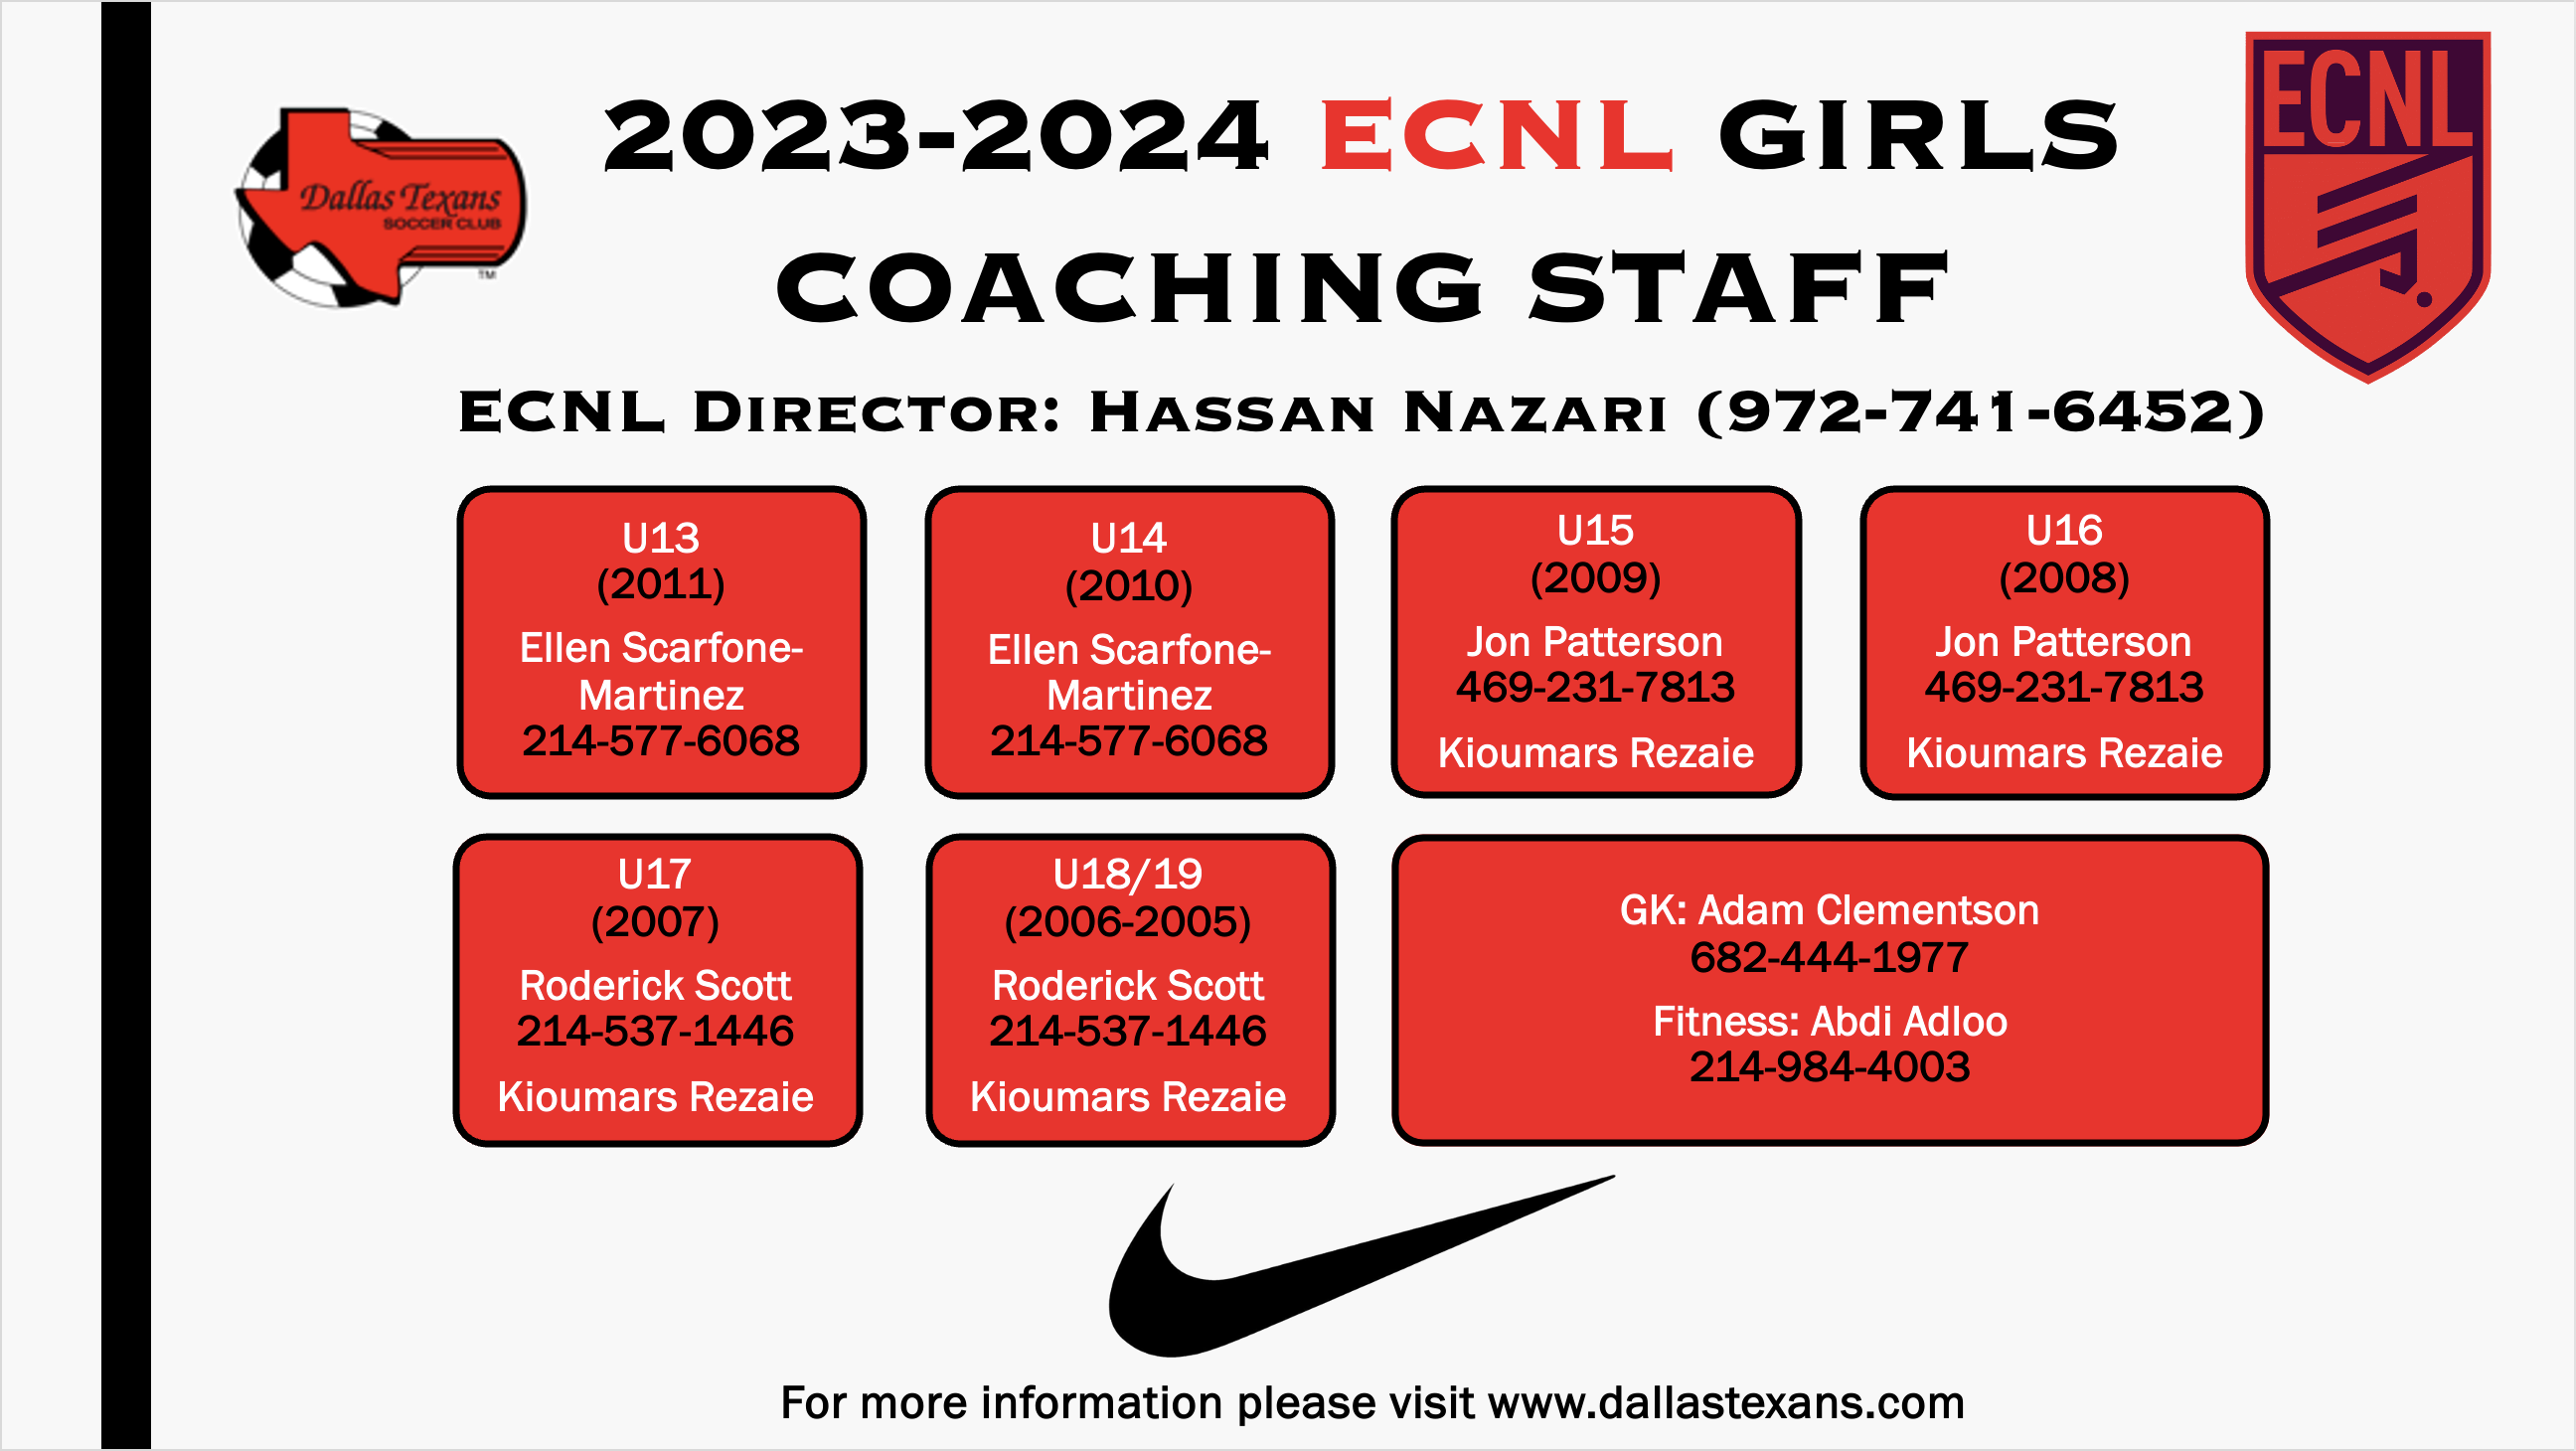 ECNL Girls